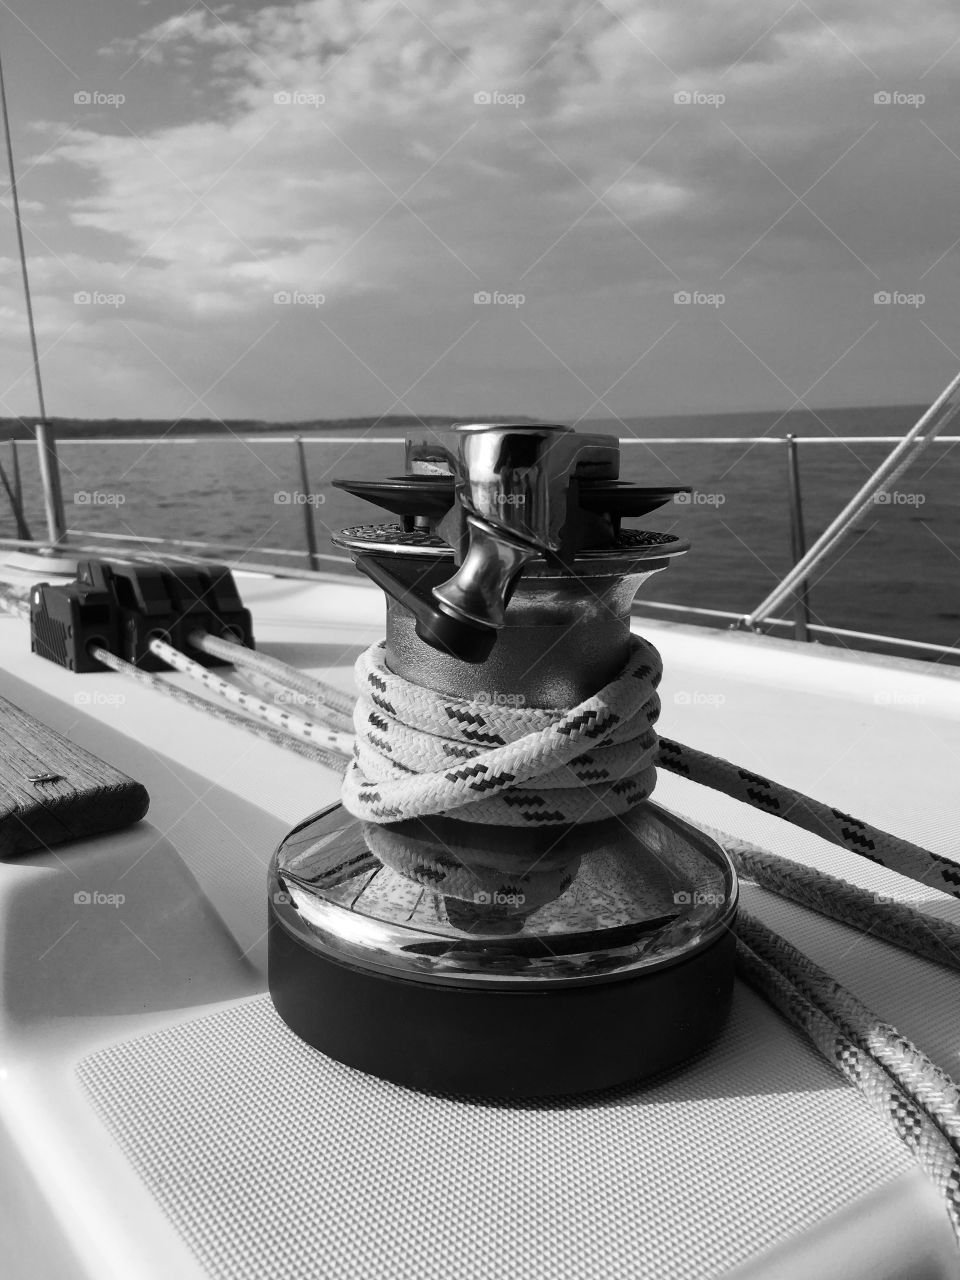 Rope at a yacht at sea closeup